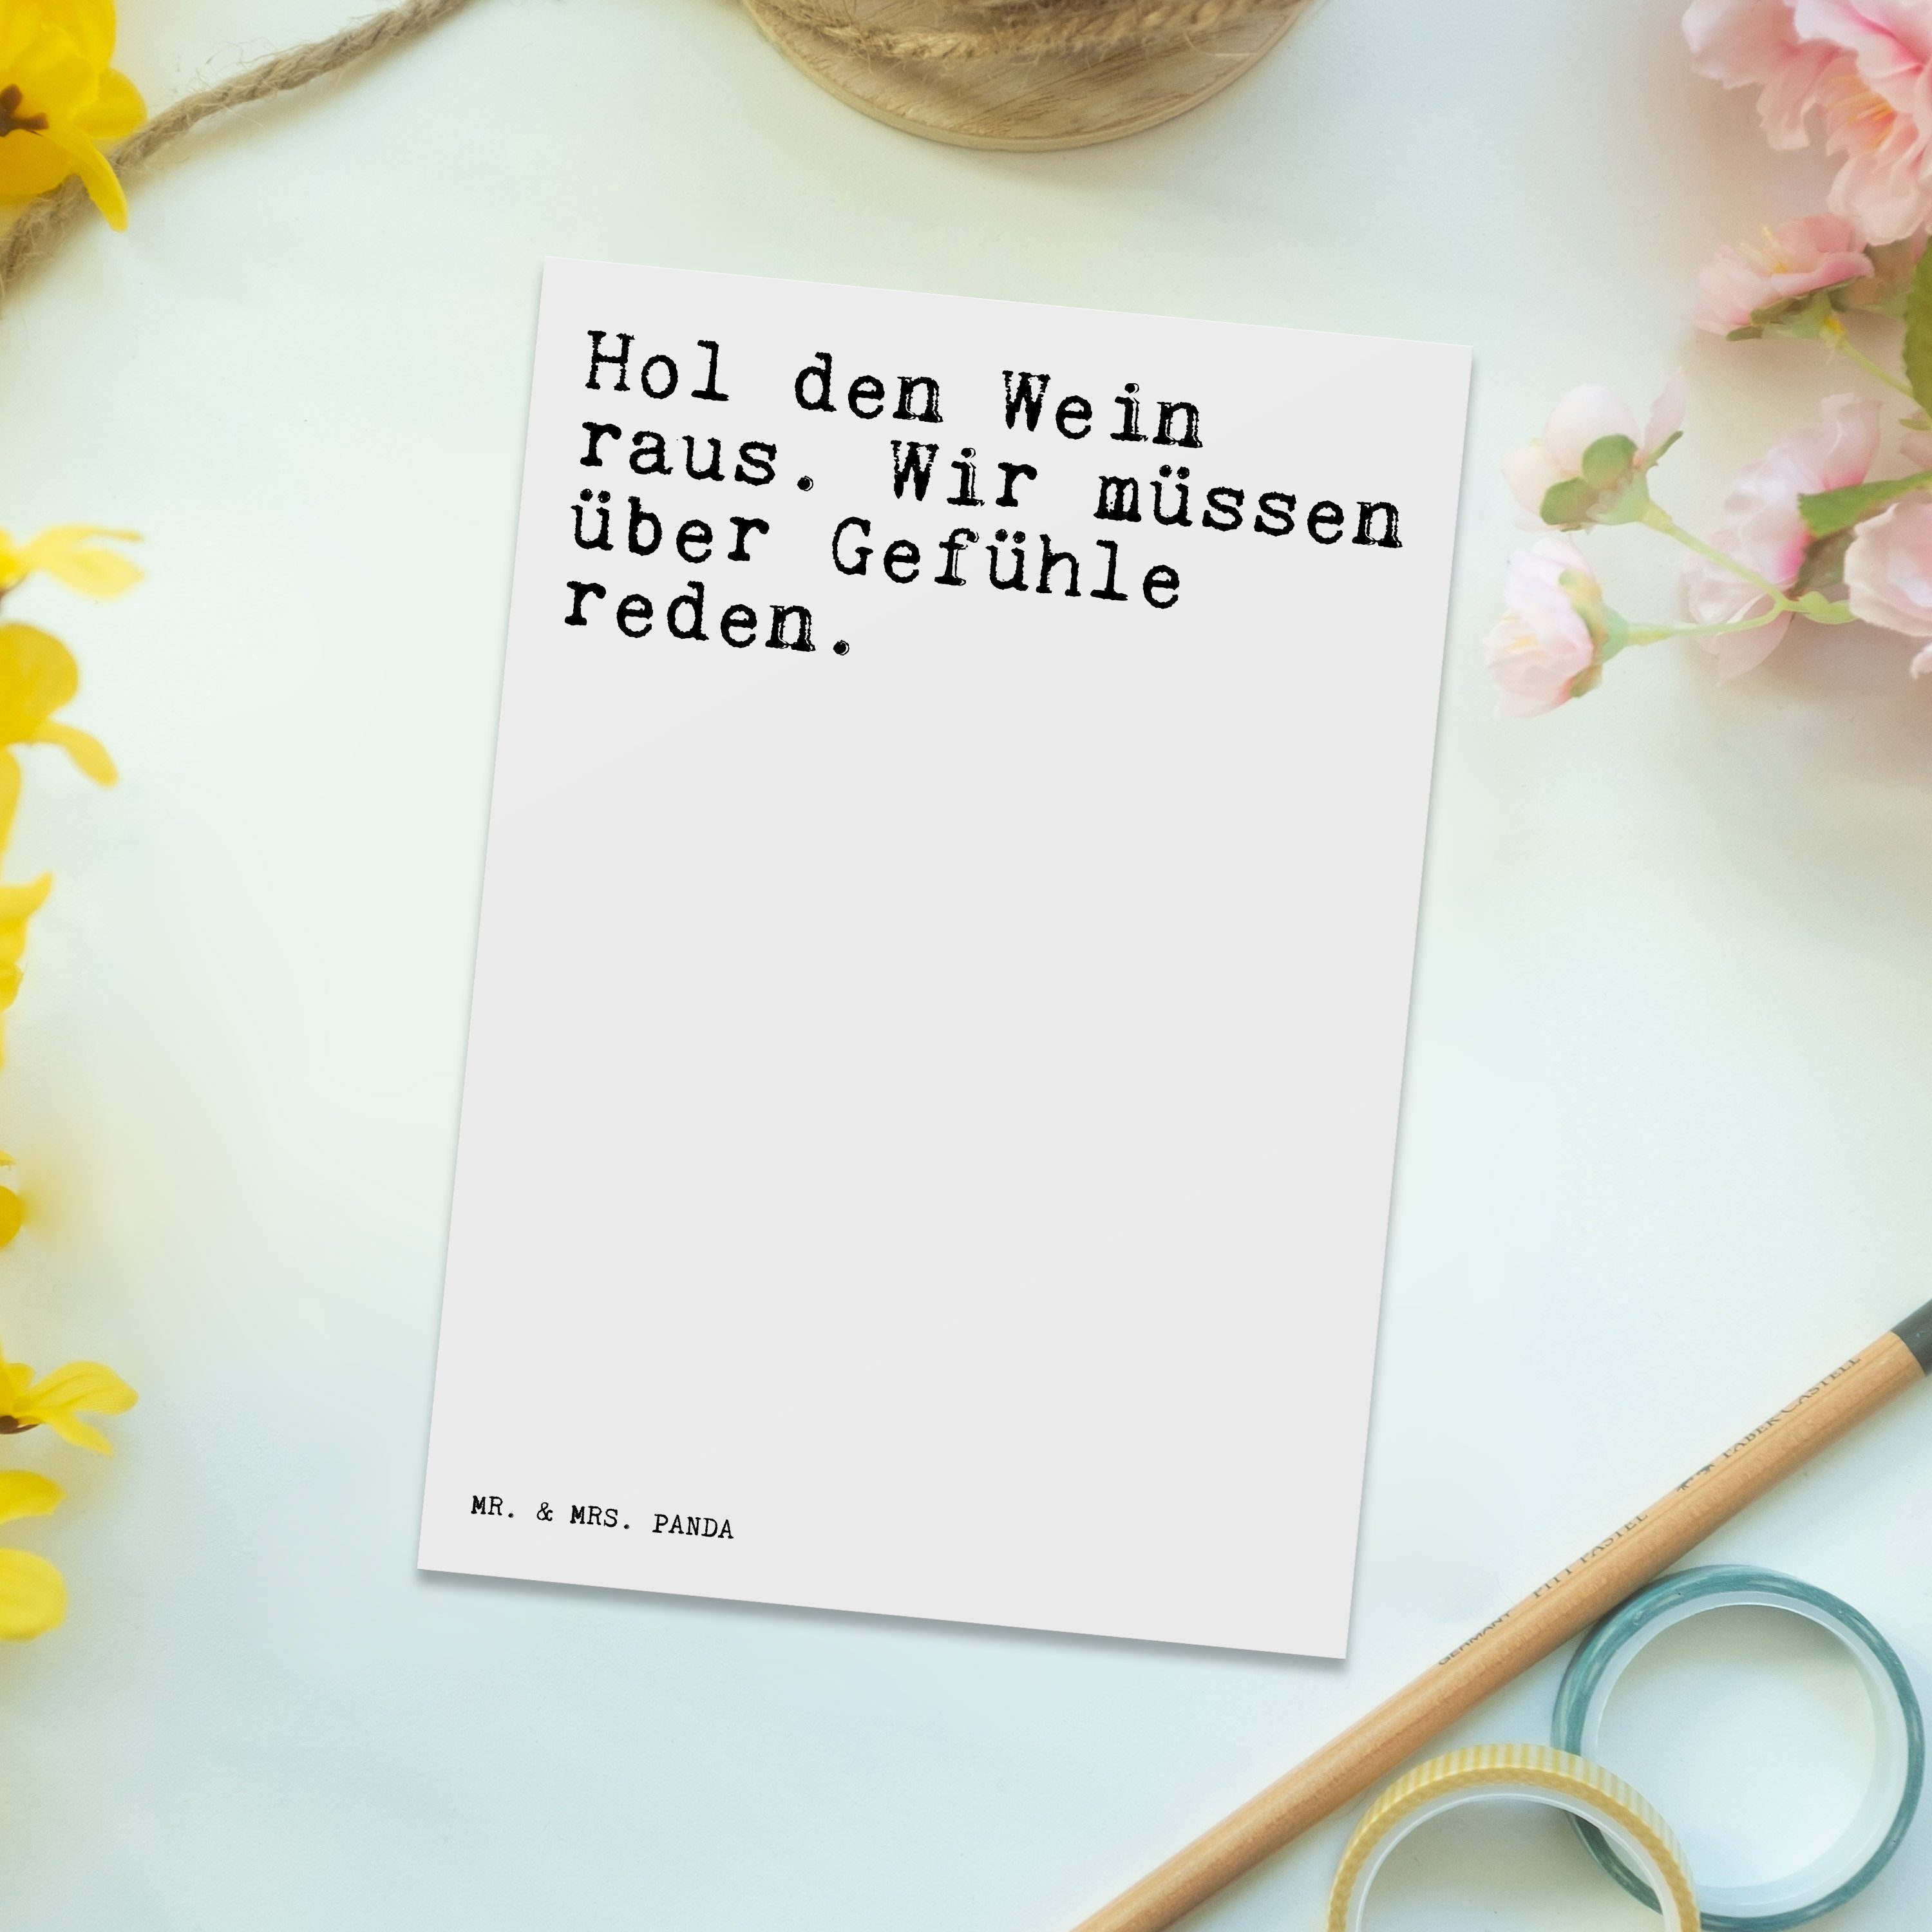 Mr. & Mrs. Panda den Spruch Geschenk, Spr - lustig, Genießer, - Postkarte Weiß Wein Hol raus